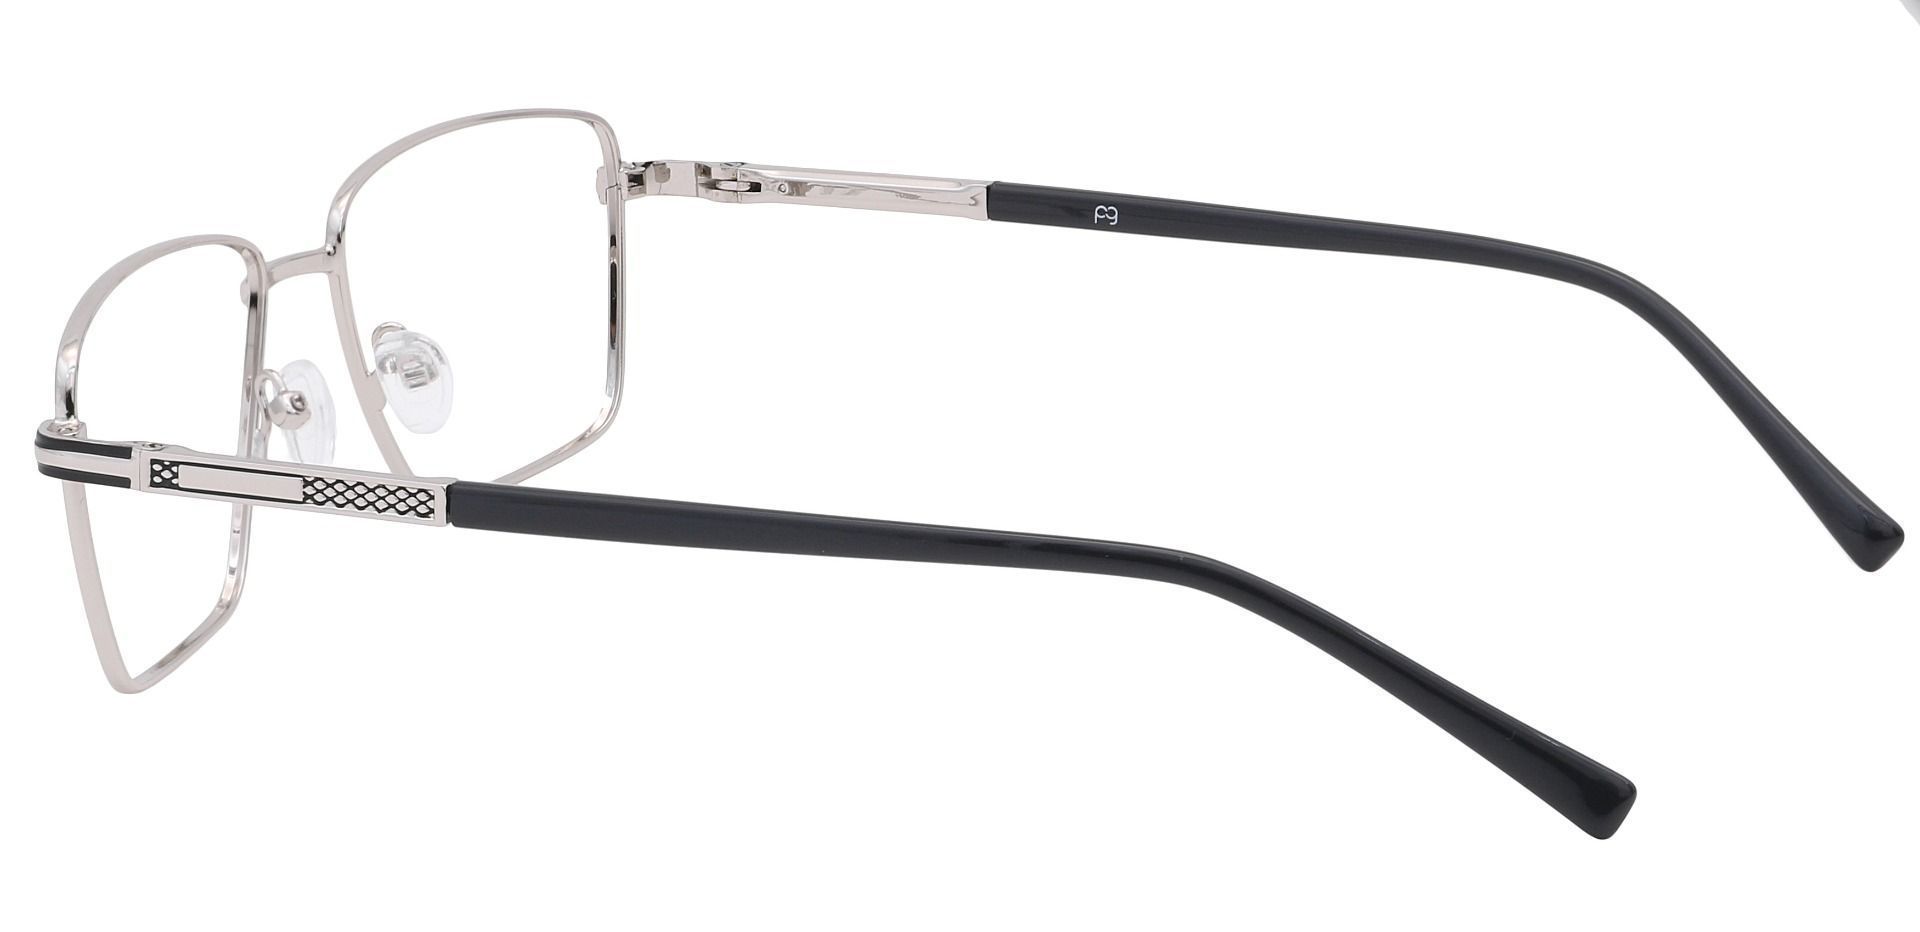 Daniel Rectangle Eyeglasses Frame - Silver